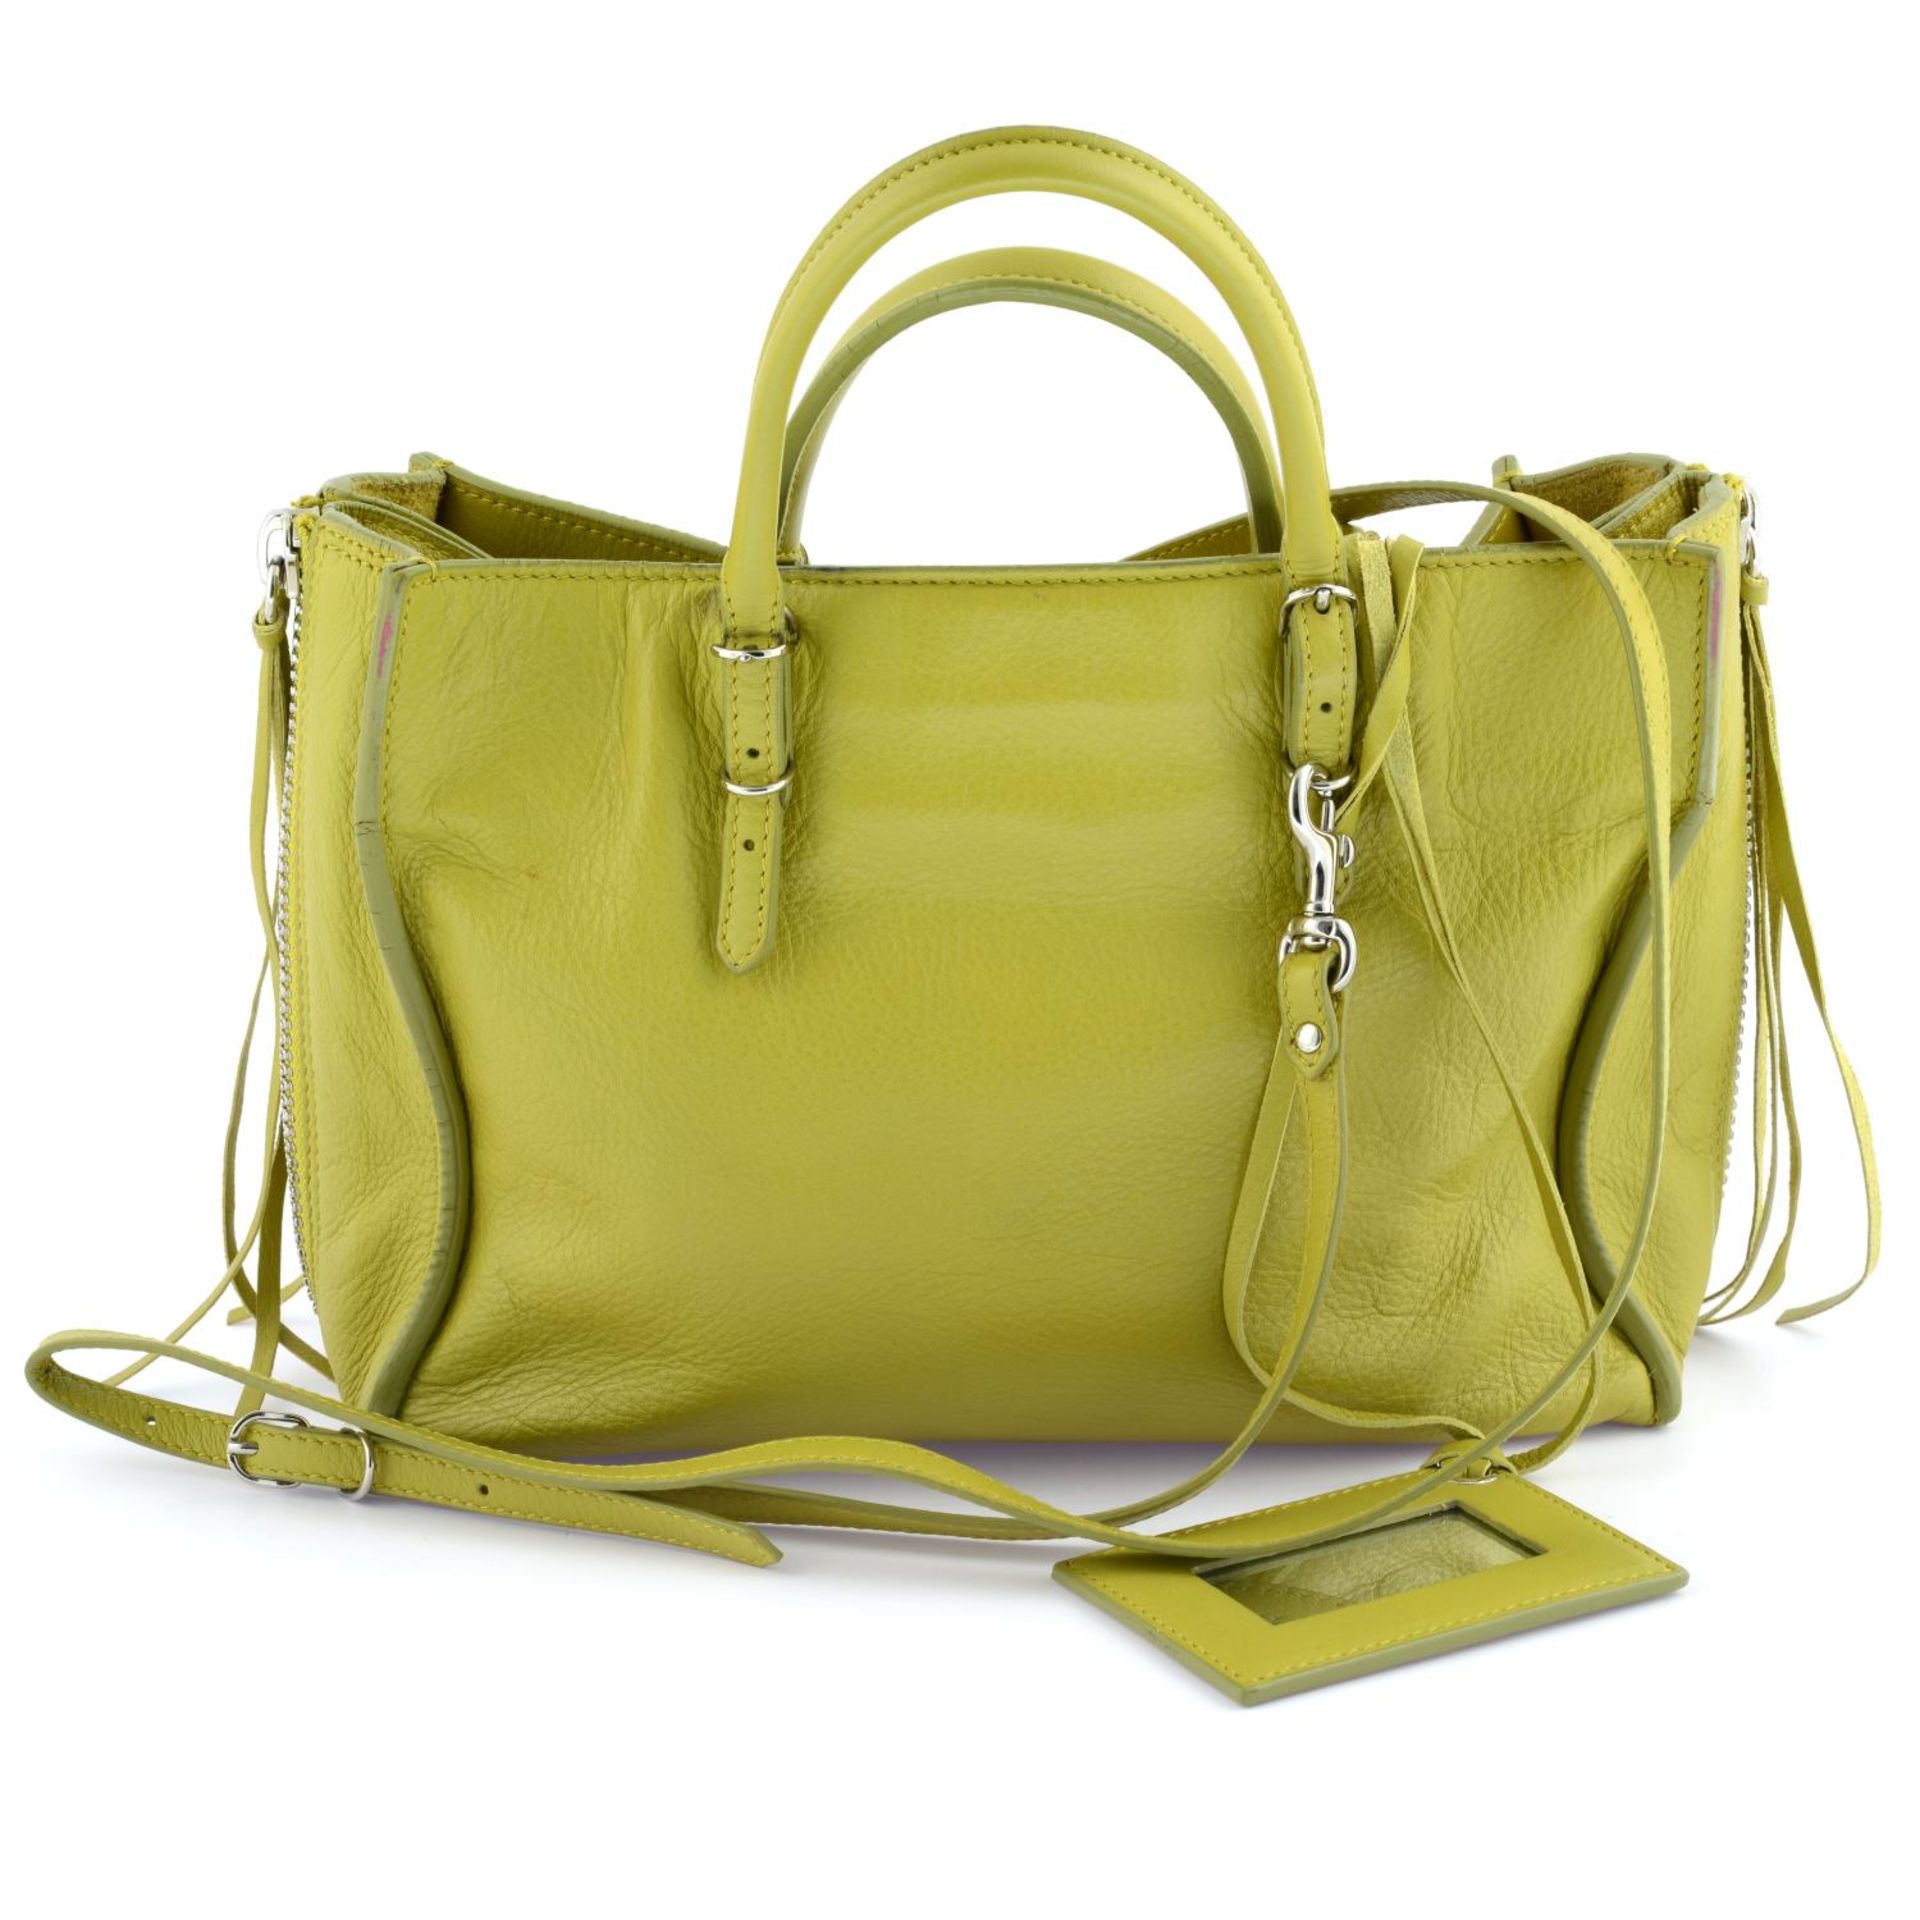 BALENCIAGA - a chartreuse leather Papier A6 handbag. - Image 2 of 7